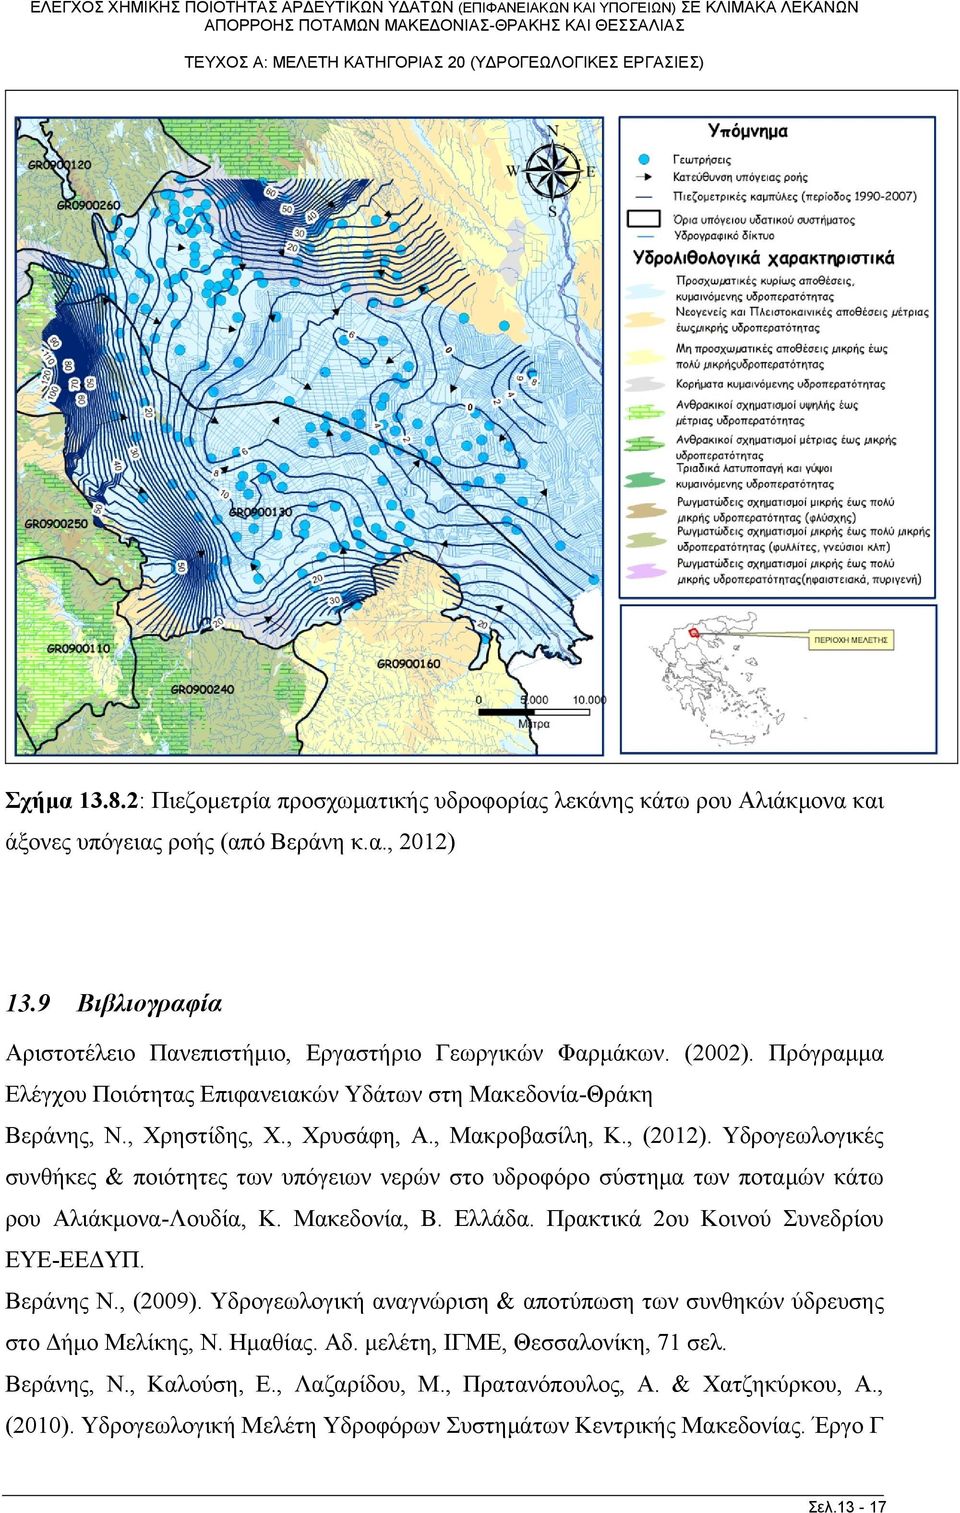 , Μακροβασίλη, Κ., (2012). Υδρογεωλογικές συνθήκες & ποιότητες των υπόγειων νερών στο υδροφόρο σύστημα των ποταμών κάτω ρου Αλιάκμονα-Λουδία, Κ. Μακεδονία, Β. Ελλάδα.